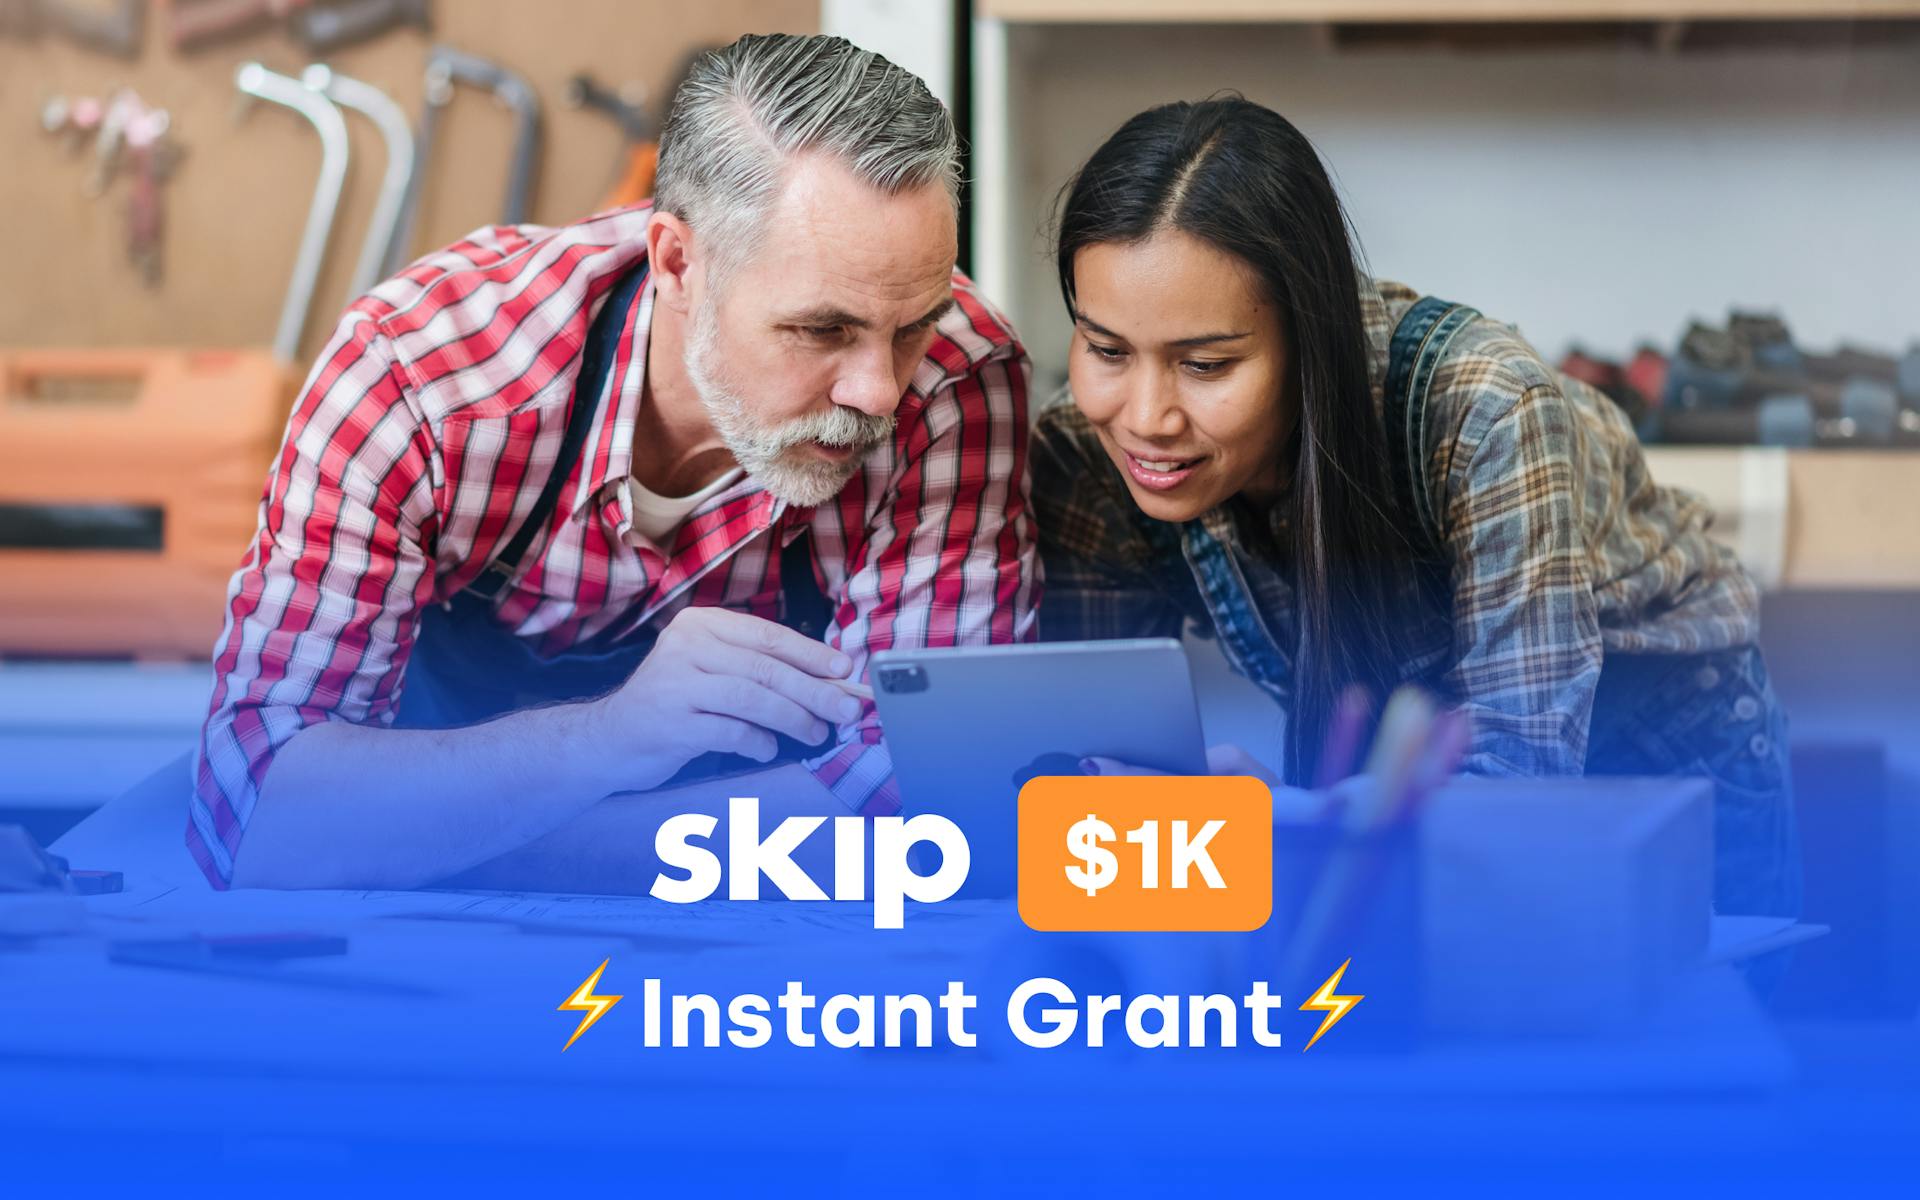 The Skip $1k Instant Grants #18 Image